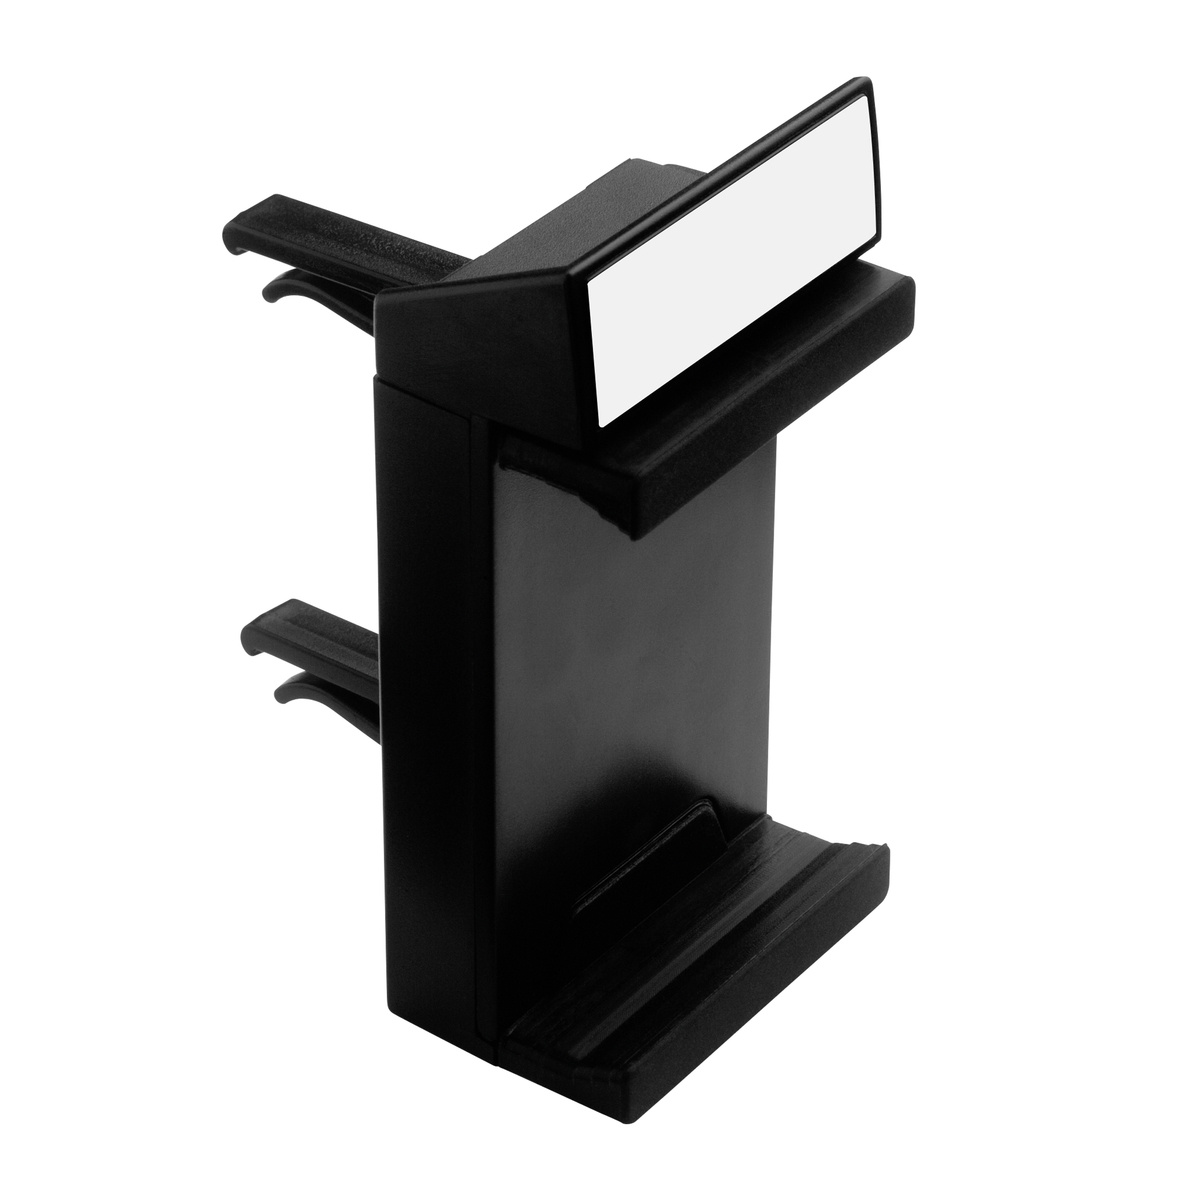 LM KFZ-Smartphone-Halterung REFLECTS-MARGATE BLACK schwarz, schwarz/weiß